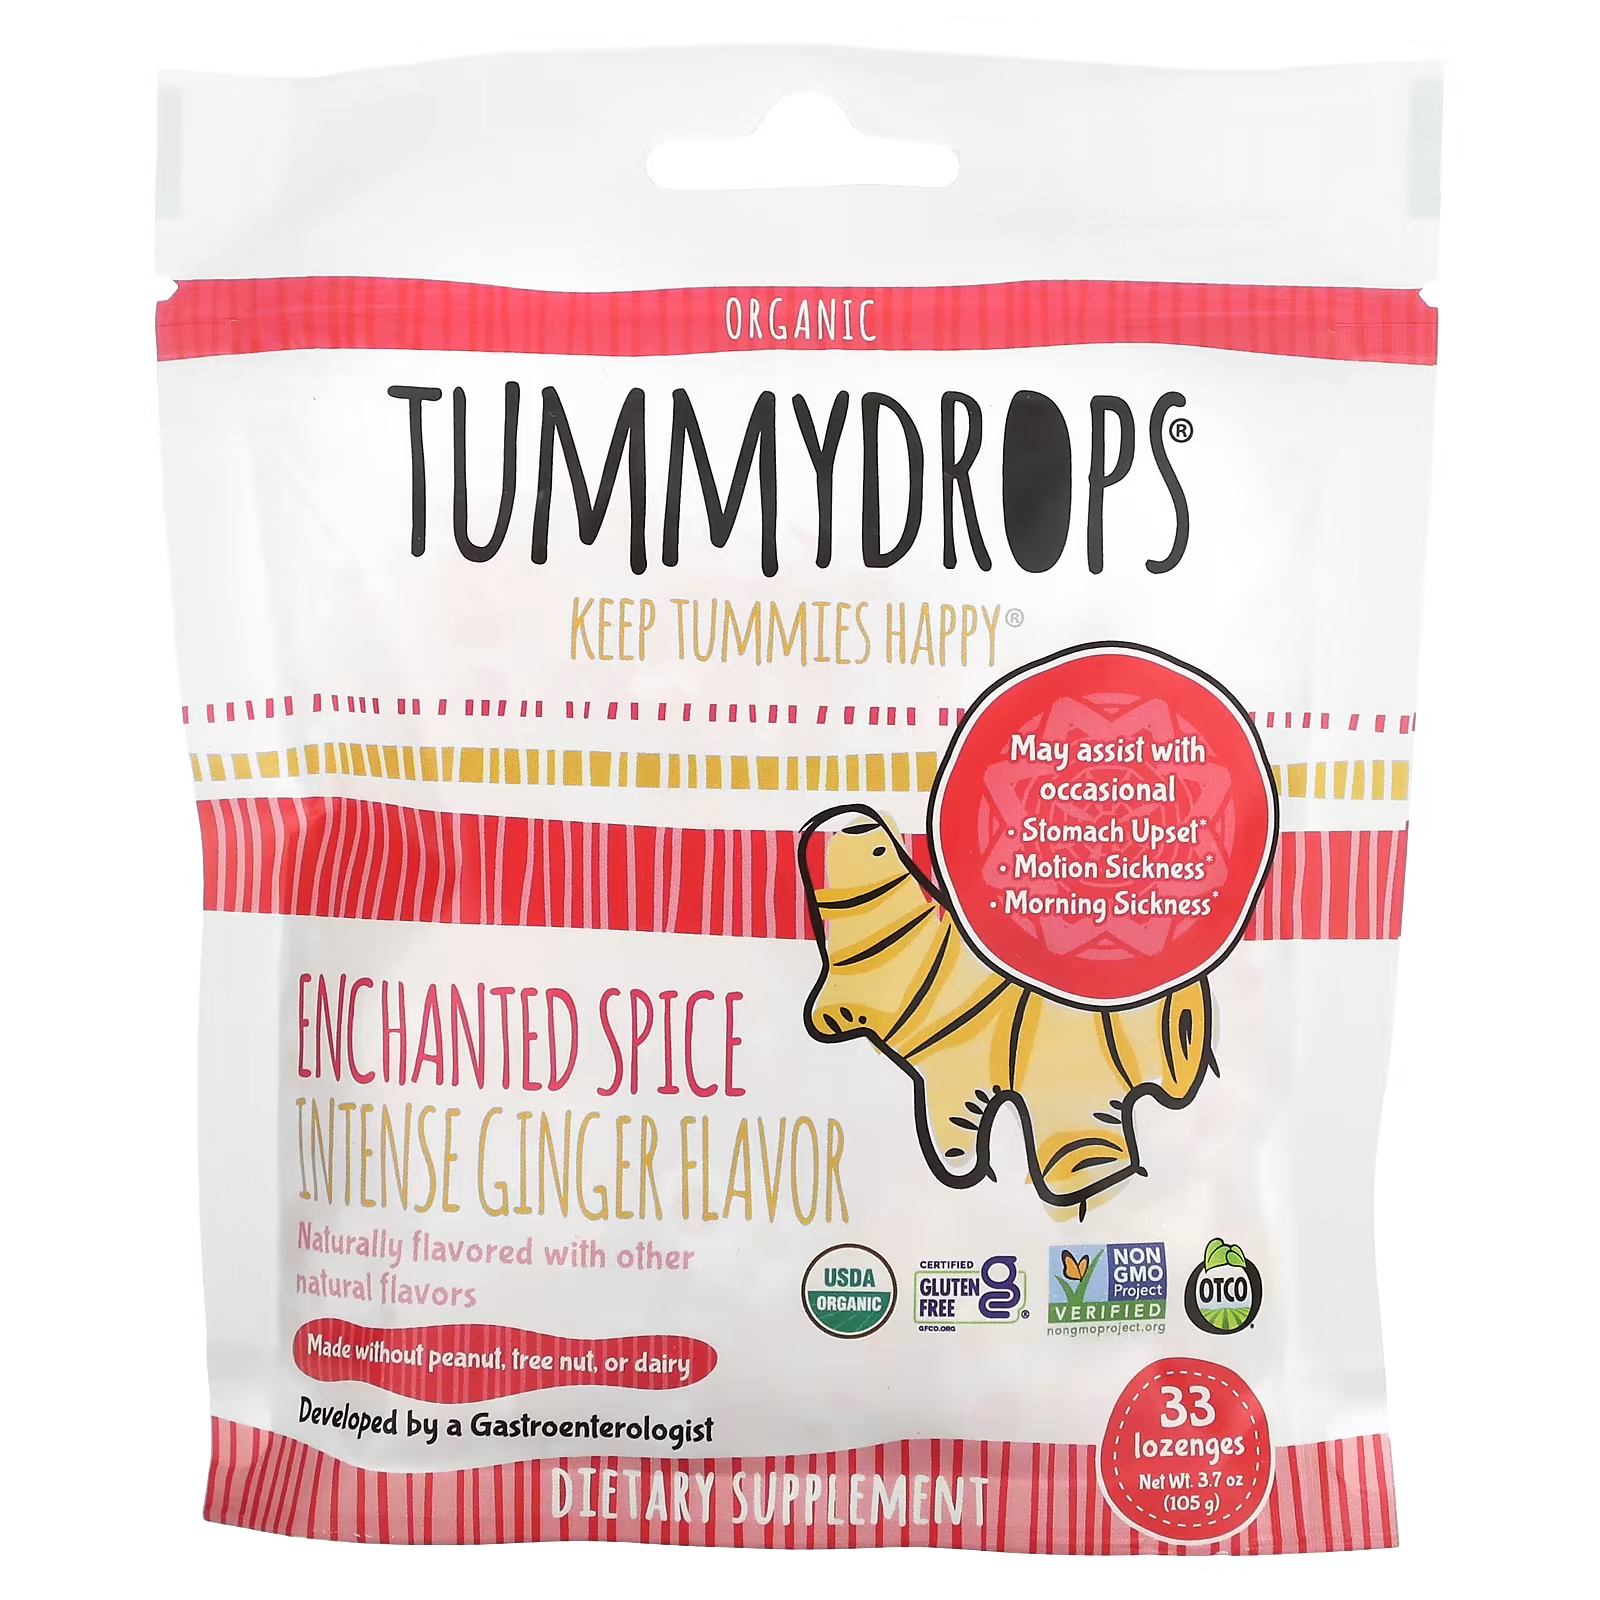 Пищевая добавка Tummydrops Organic Enchanted Spice Intense Ginger, 33 пастилки tummydrops леденцы для живота со сладким имбирем и грушей 33 пастилки